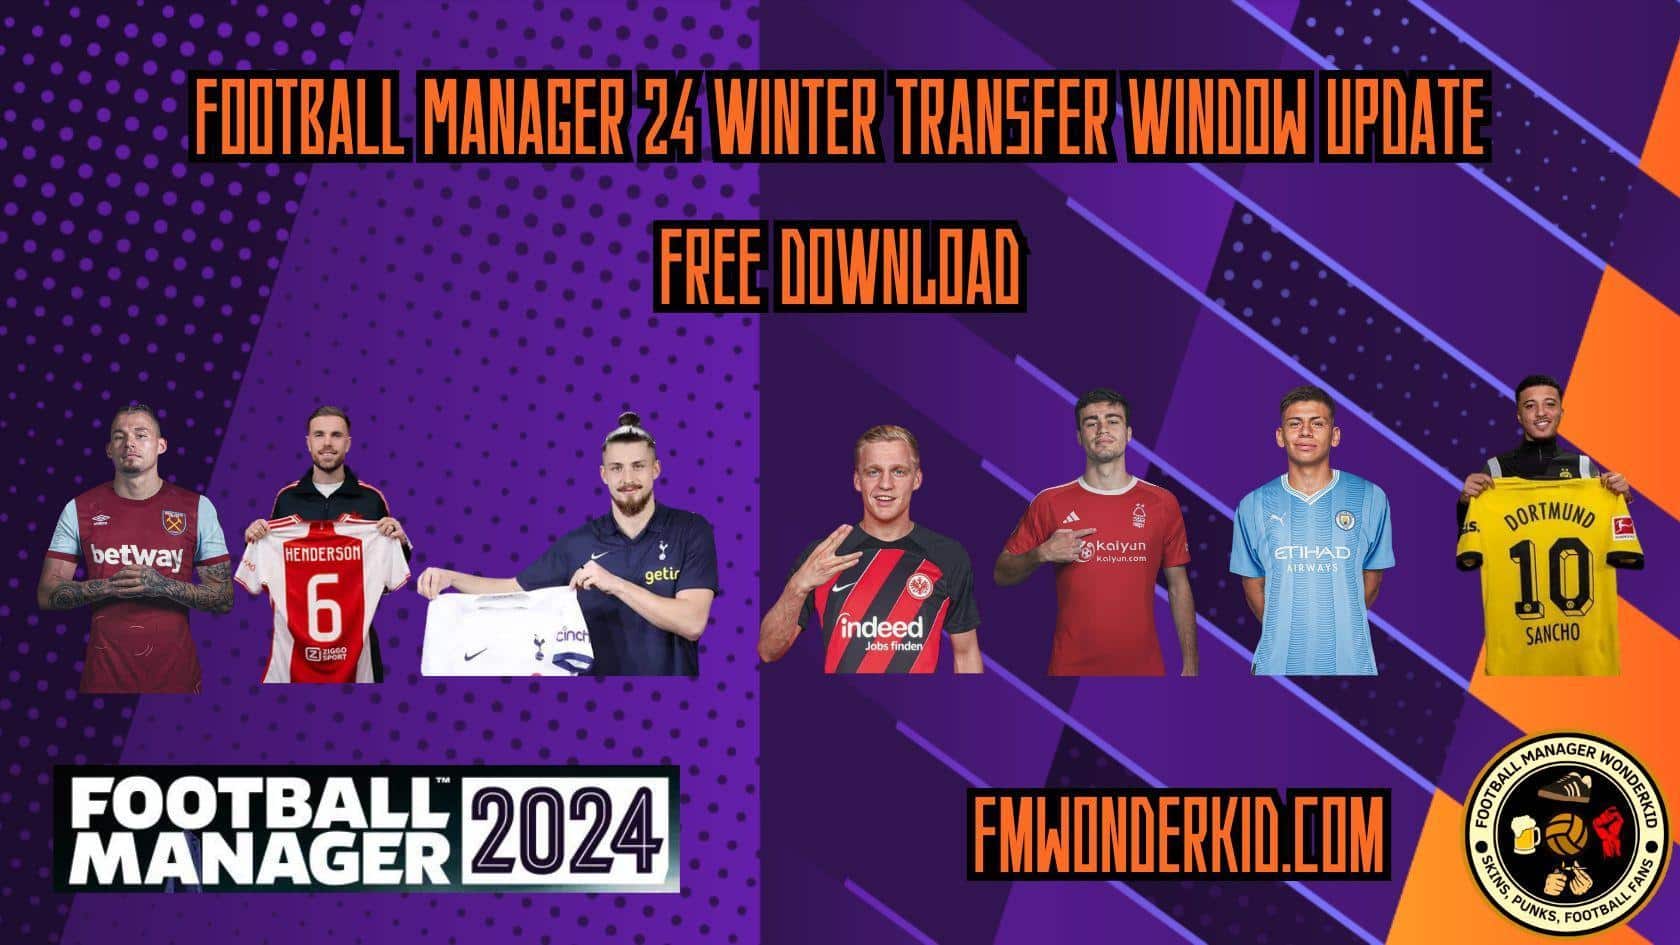 FM 24 Winter Transfer Window Update – Free Download